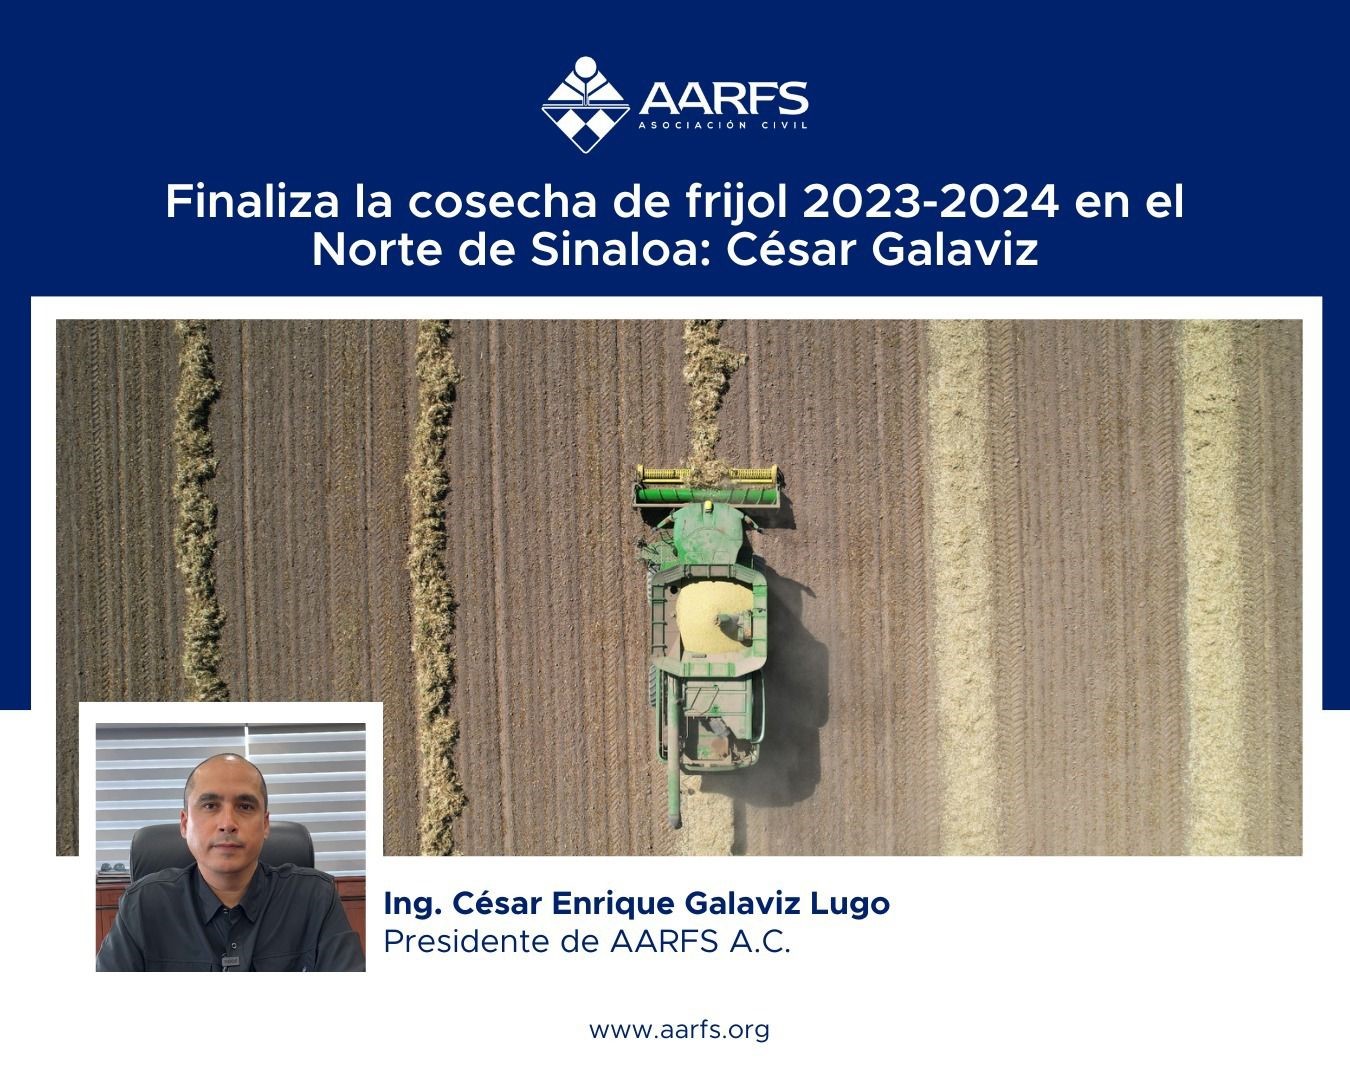 Finaliza la cosecha de frijol 2023/24 en el norte de Sinaloa: César Galaviz, AARFS.